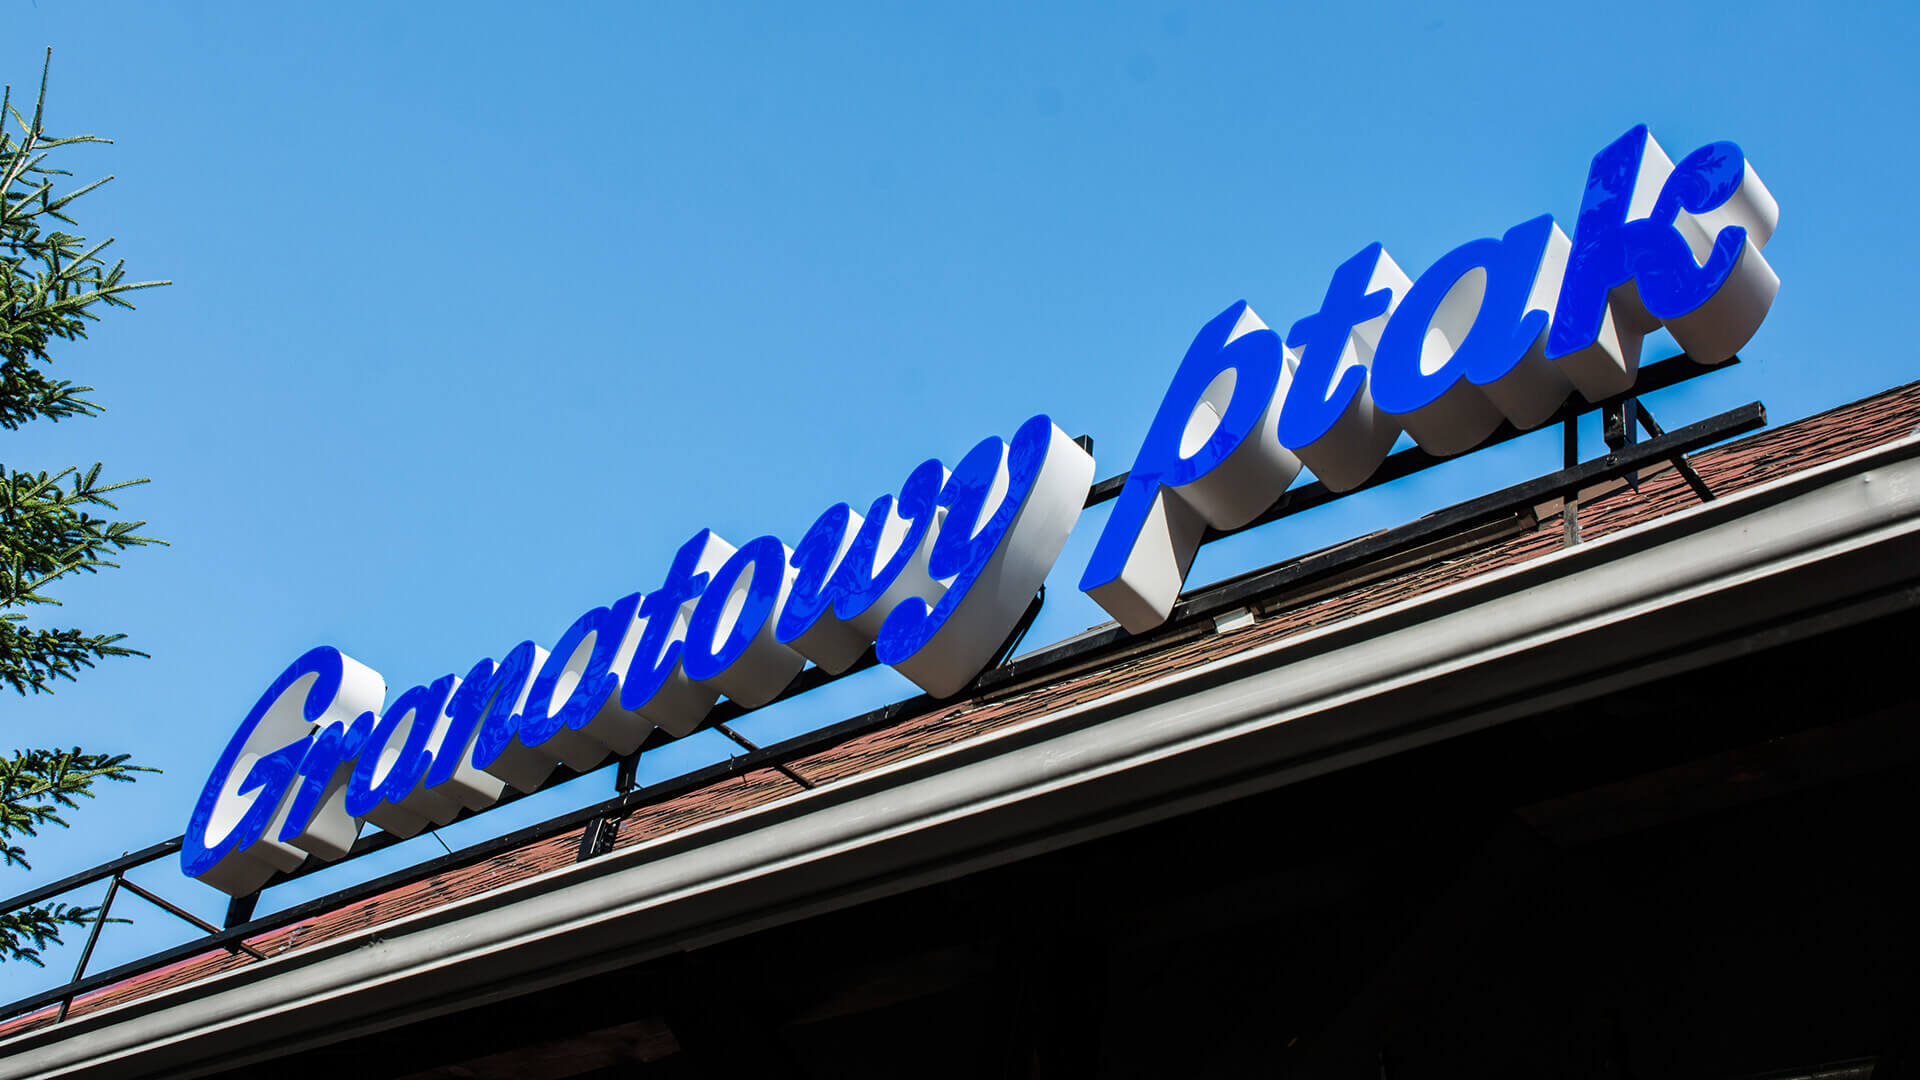 ristorante uccello granata - lettere-da-plexi-blu-uccello-blu-lettera-sul-cornice-di-tetto lettering-led-lighting-spatial-lettering-blu-lighting 